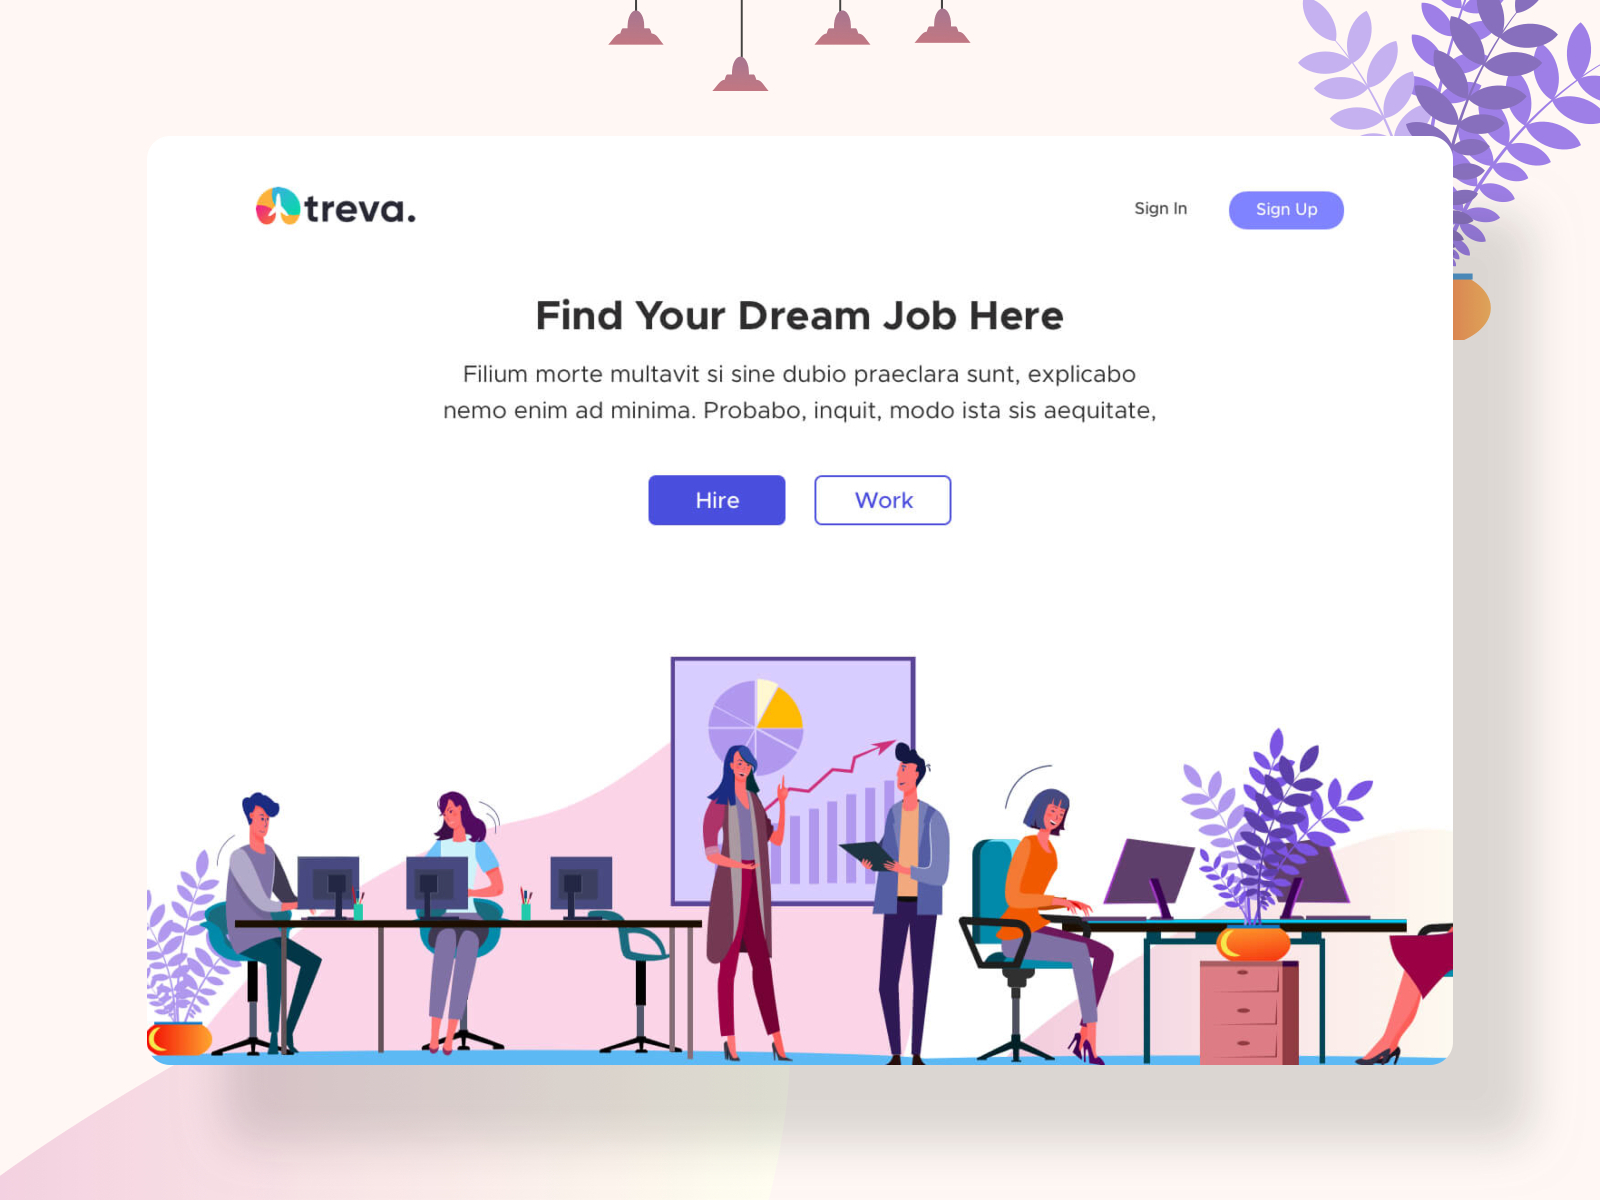 Treva - Job Hiring Platform Exploration (Sketch Freebie)